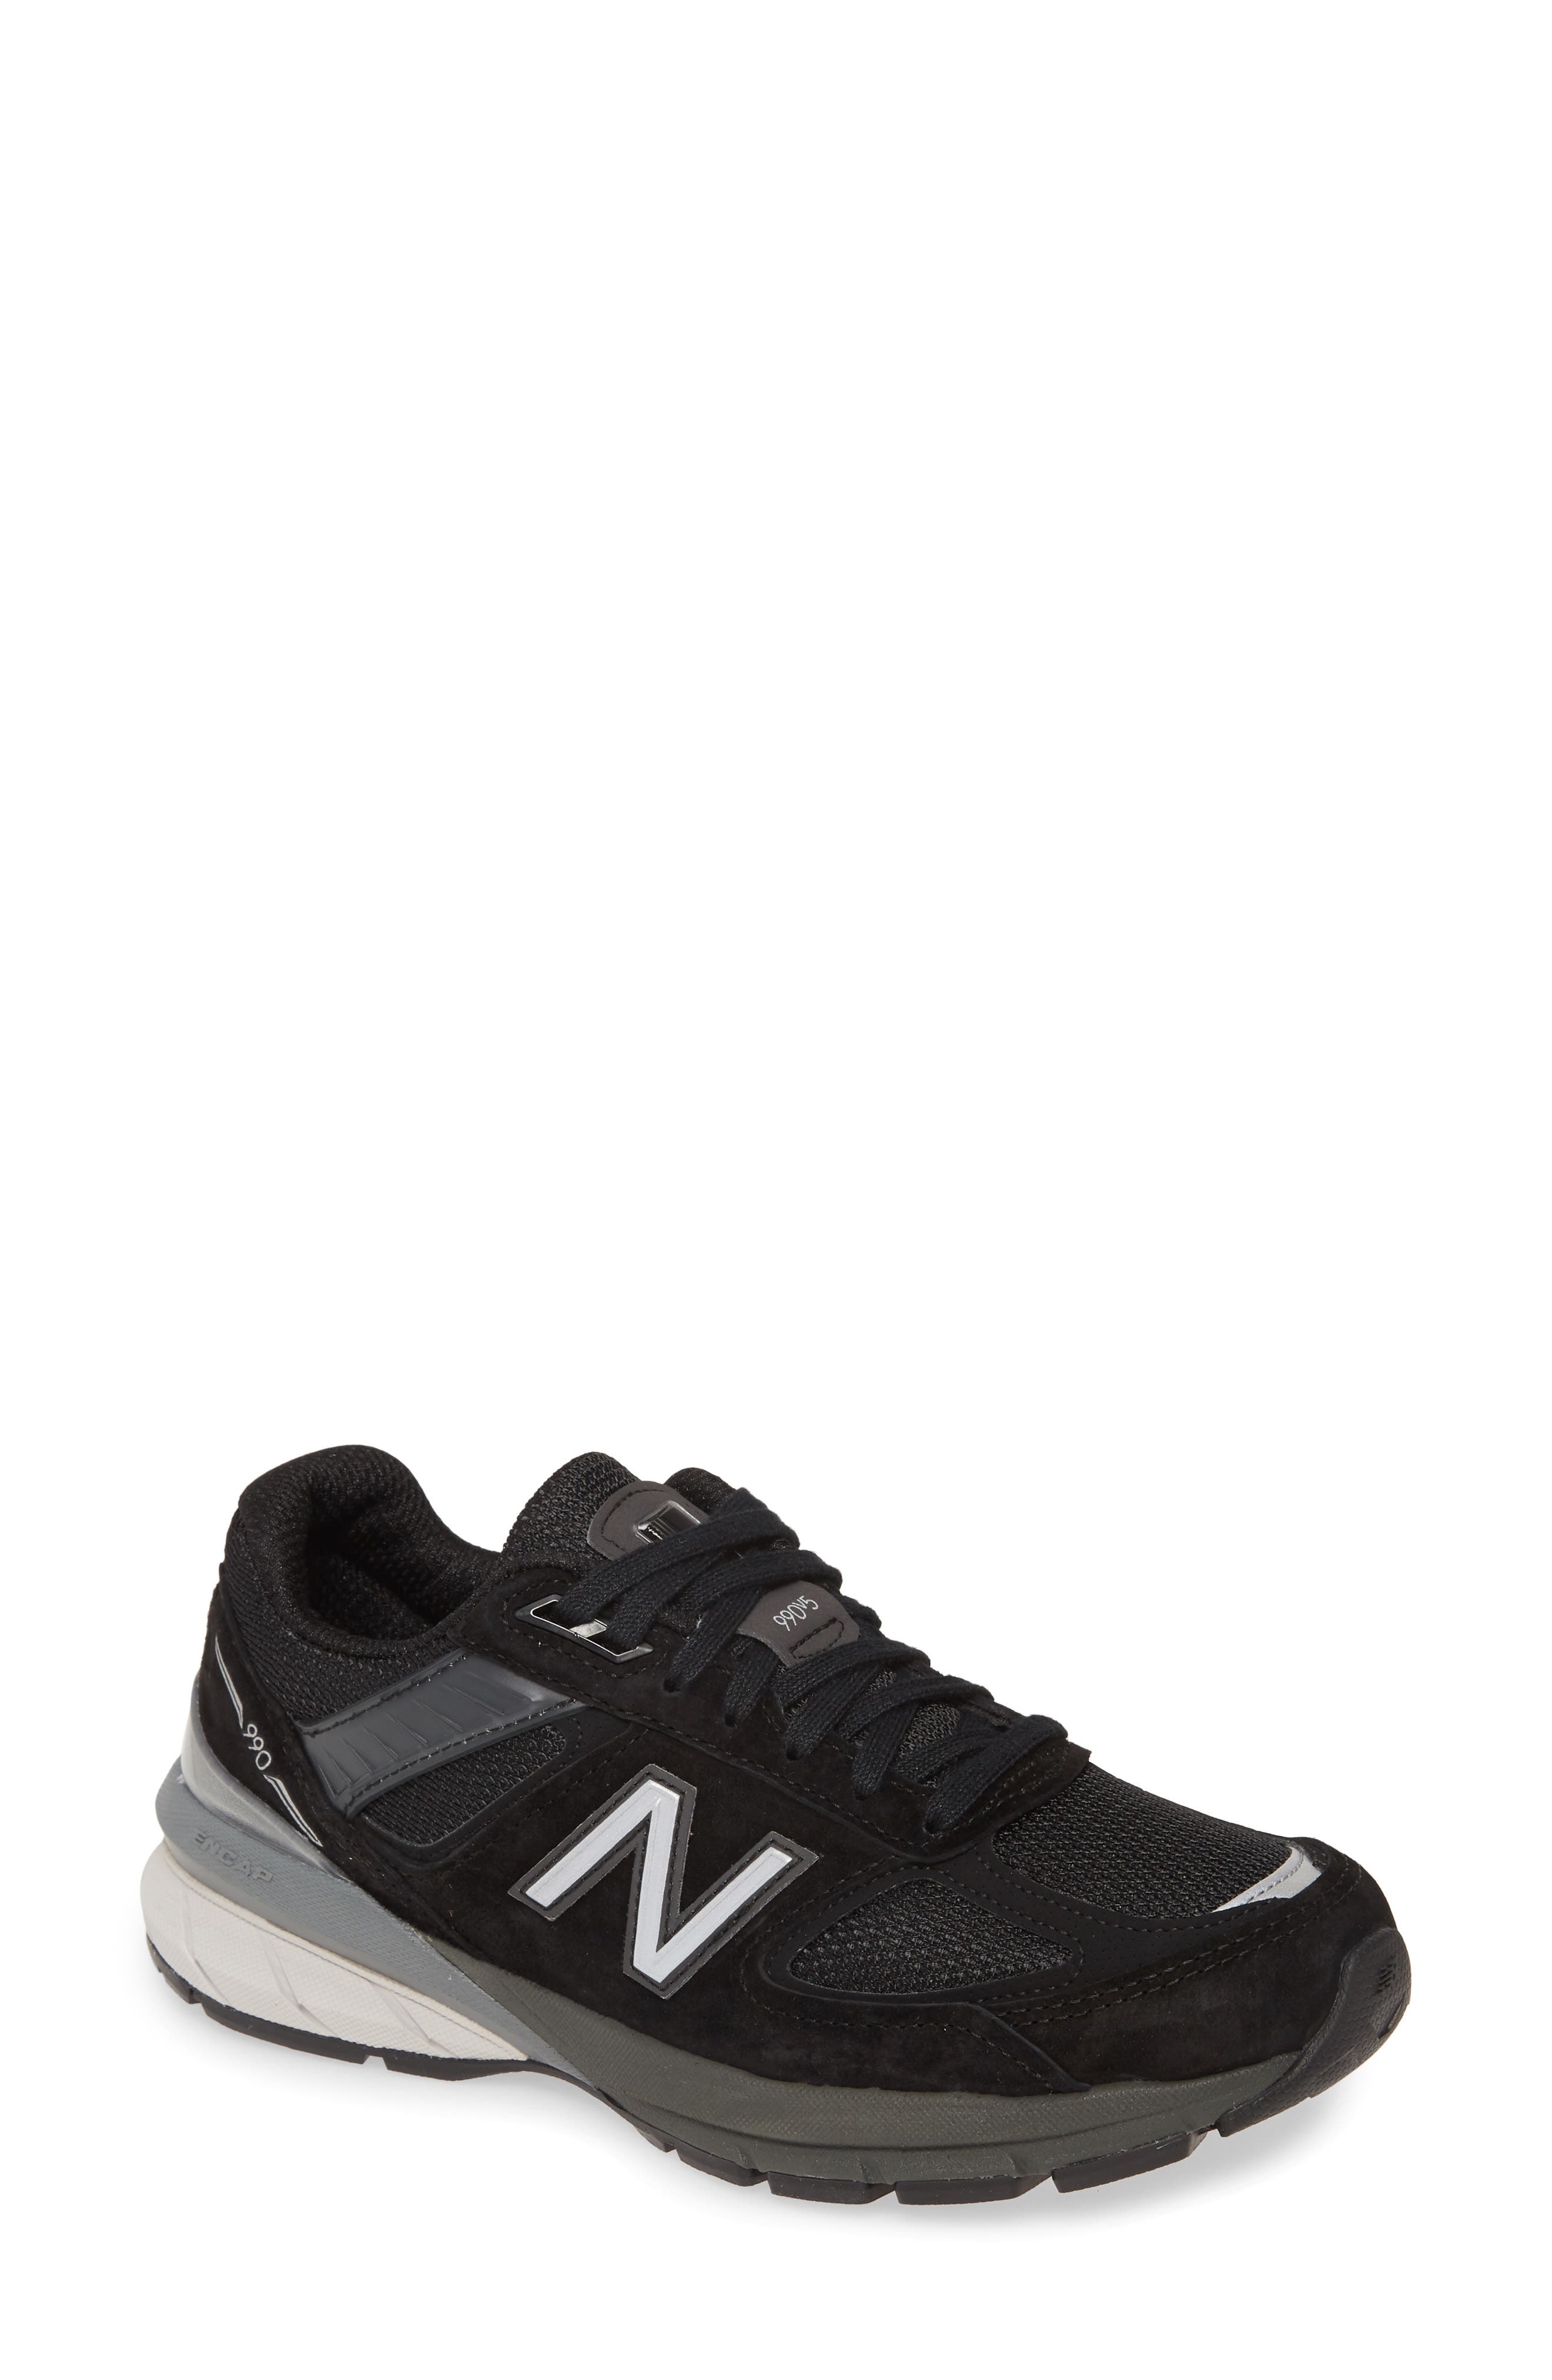 New Balance 990v5 Sneaker (Women 